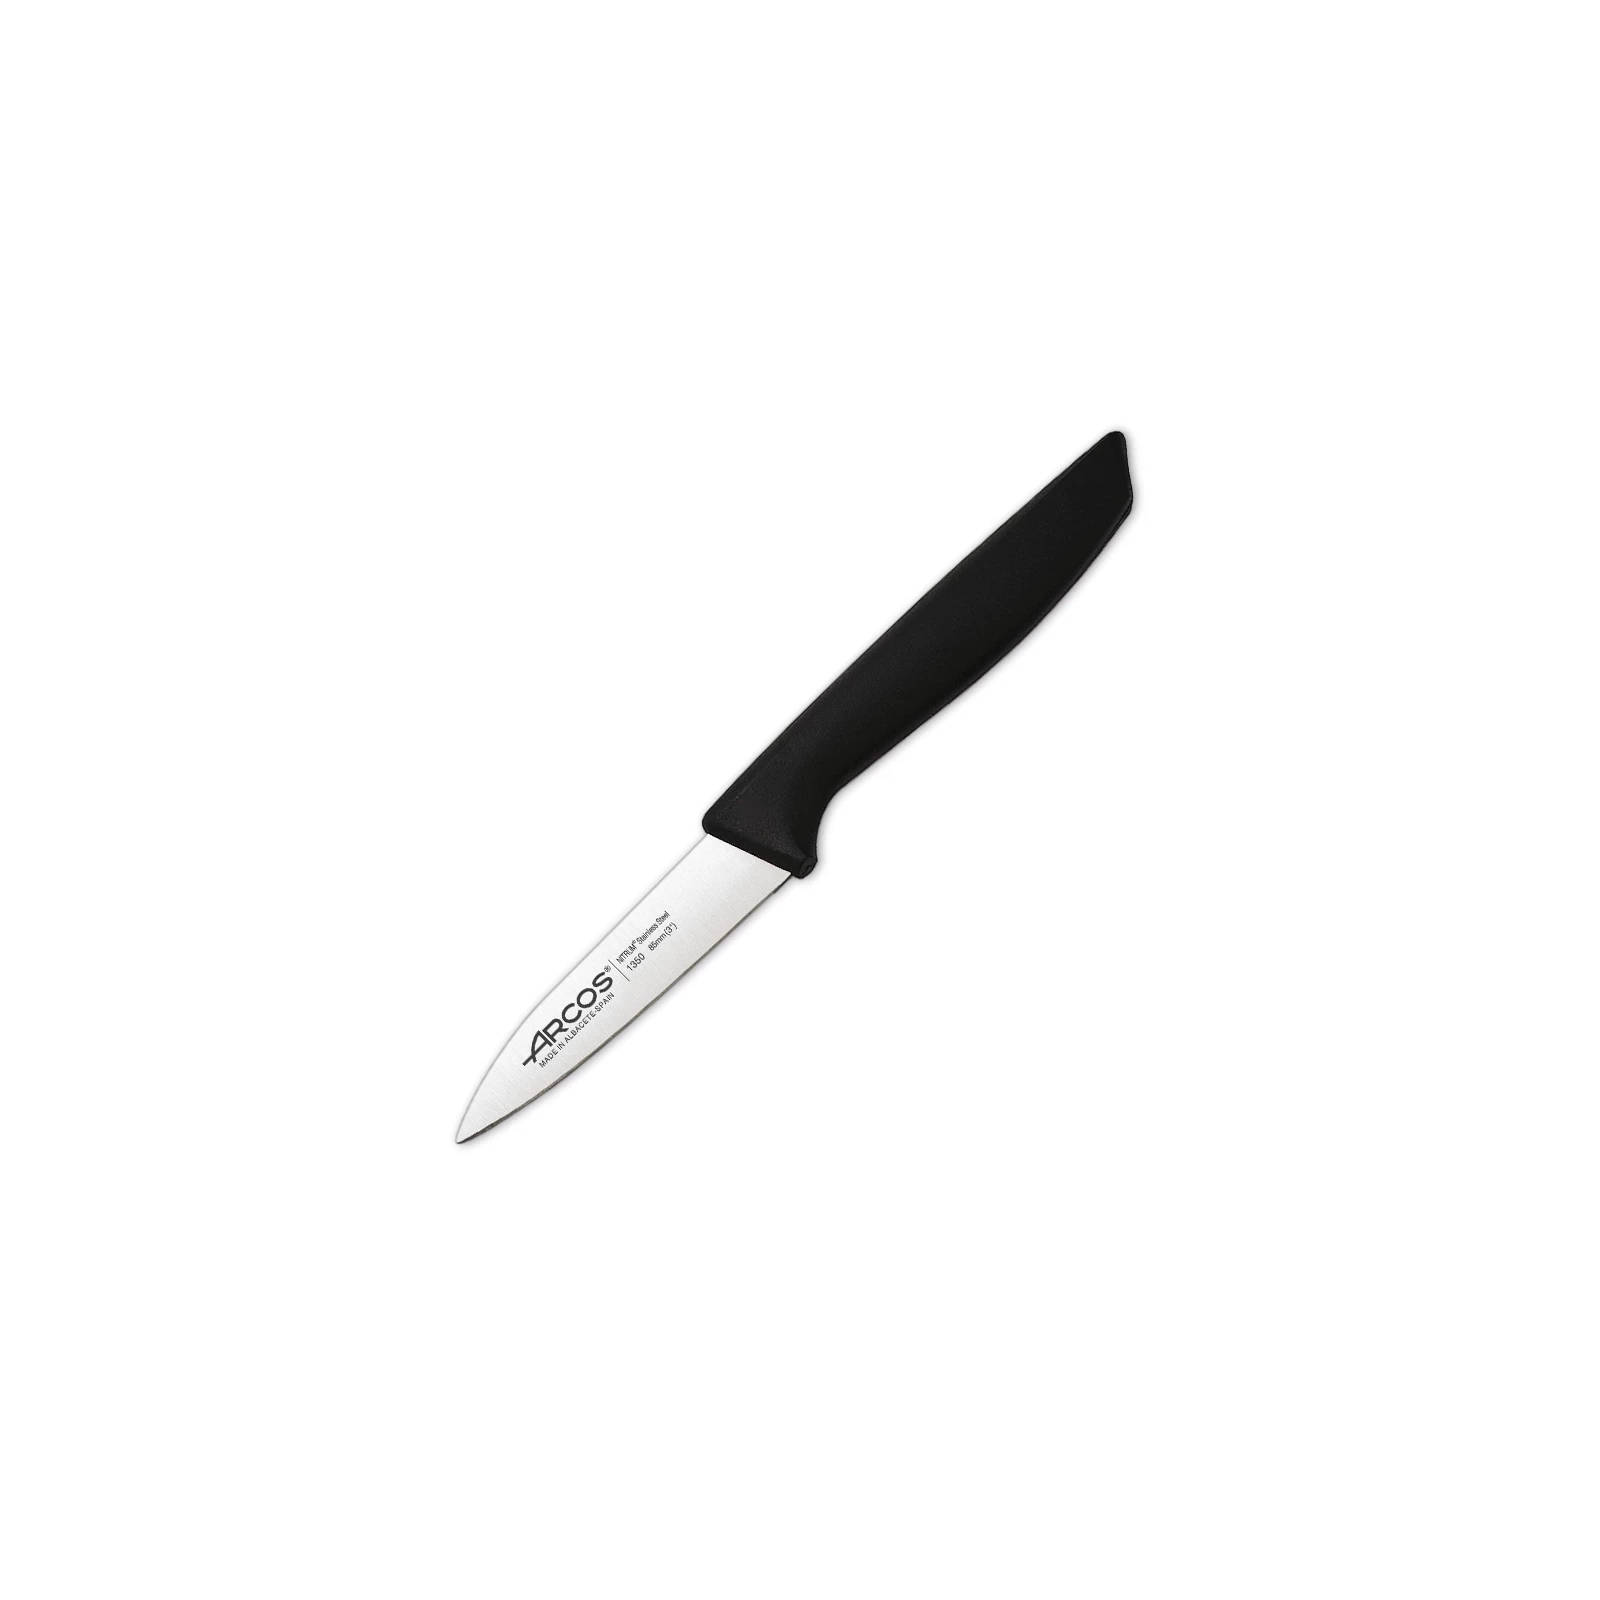 Кухонный нож Arcos Niza для хліба 200 мм (135700)